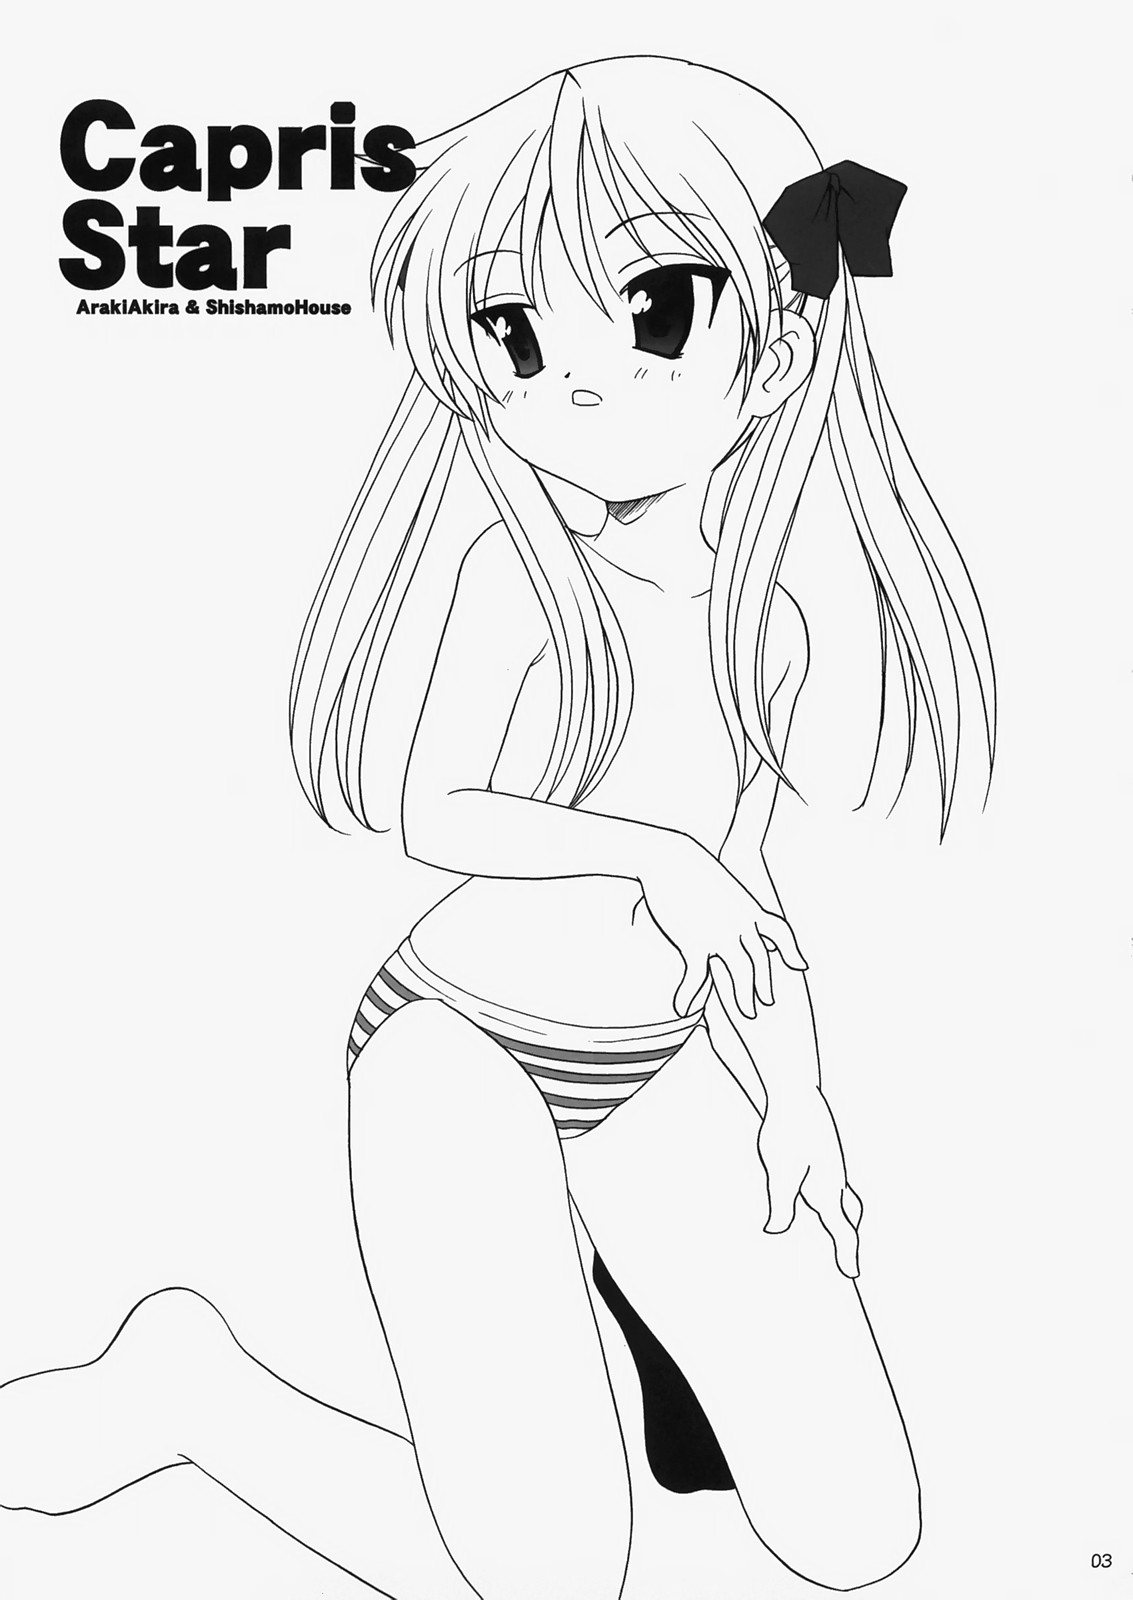 (C73) [ししゃもハウス (あらきあきら] Caprice Star (らき☆すた)